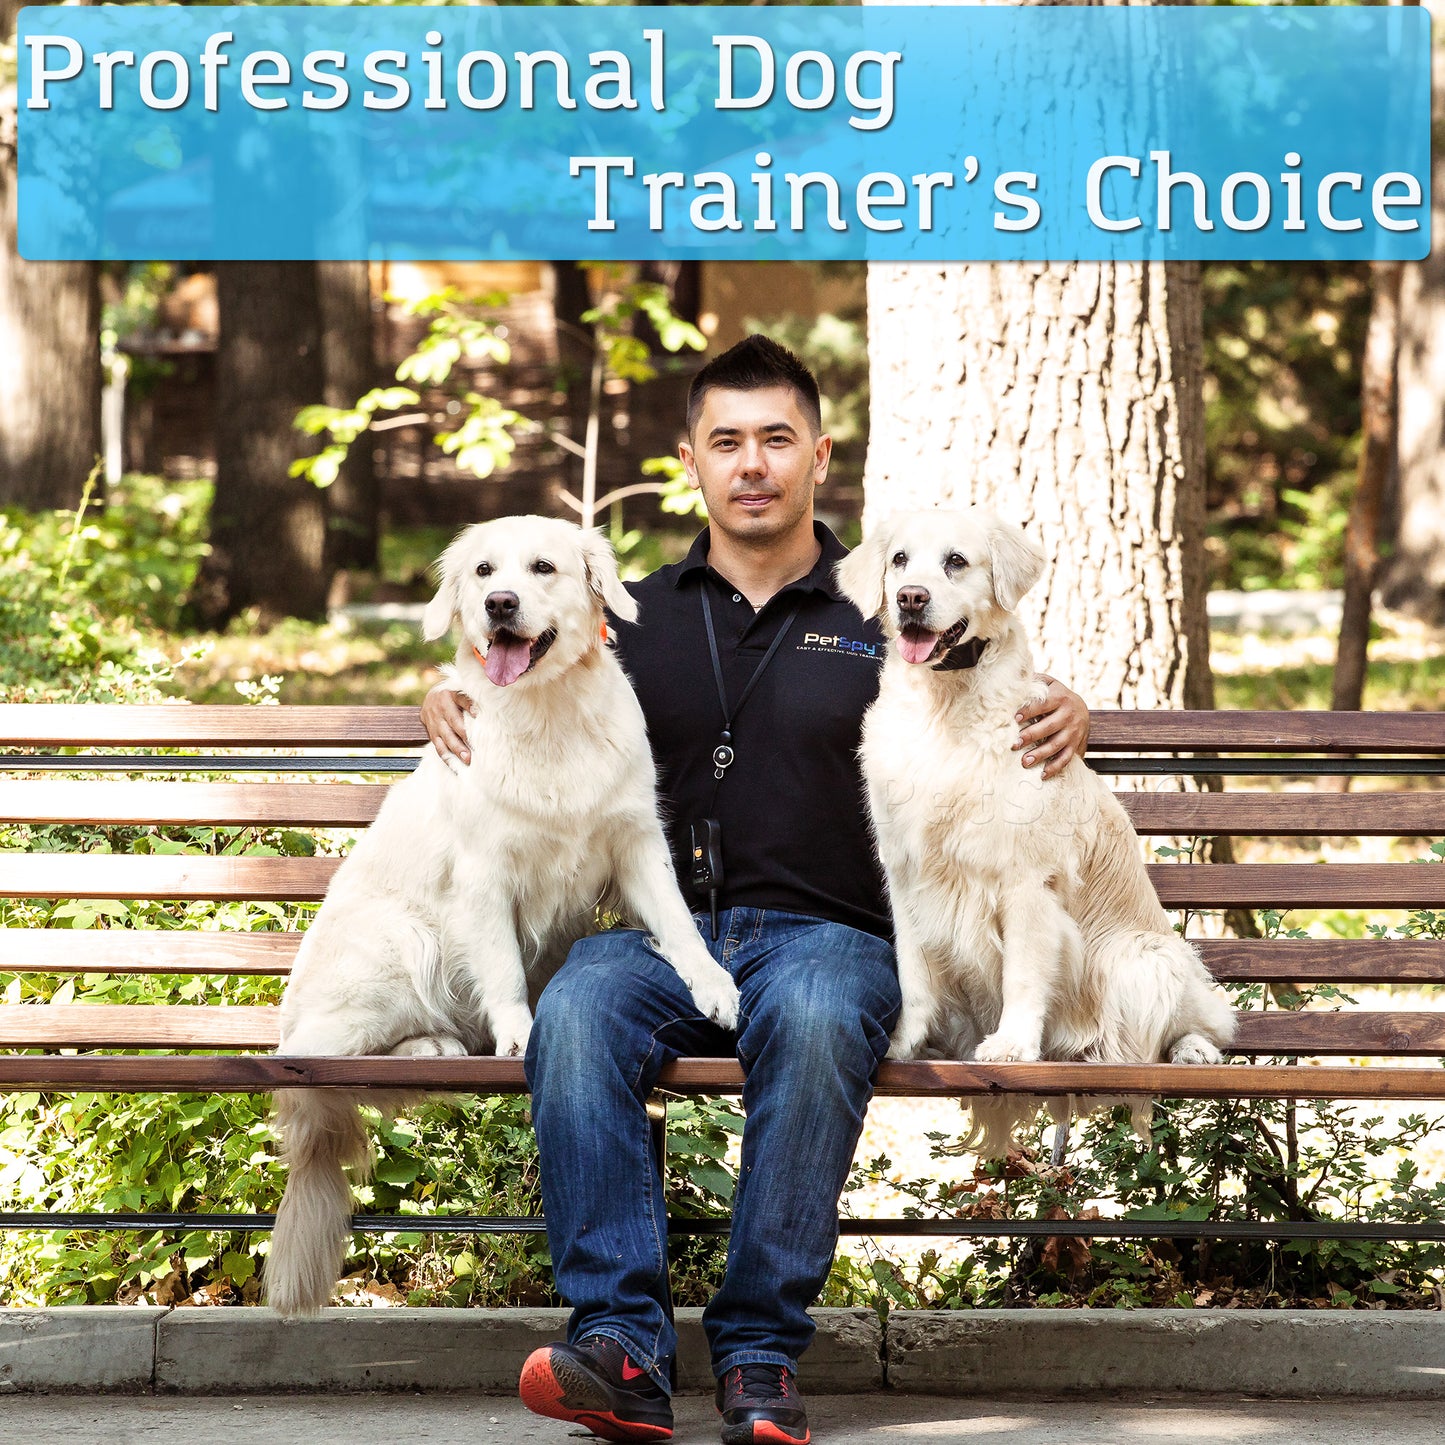 Ultimate Dog Training Bundle - professional dog trainer's choice